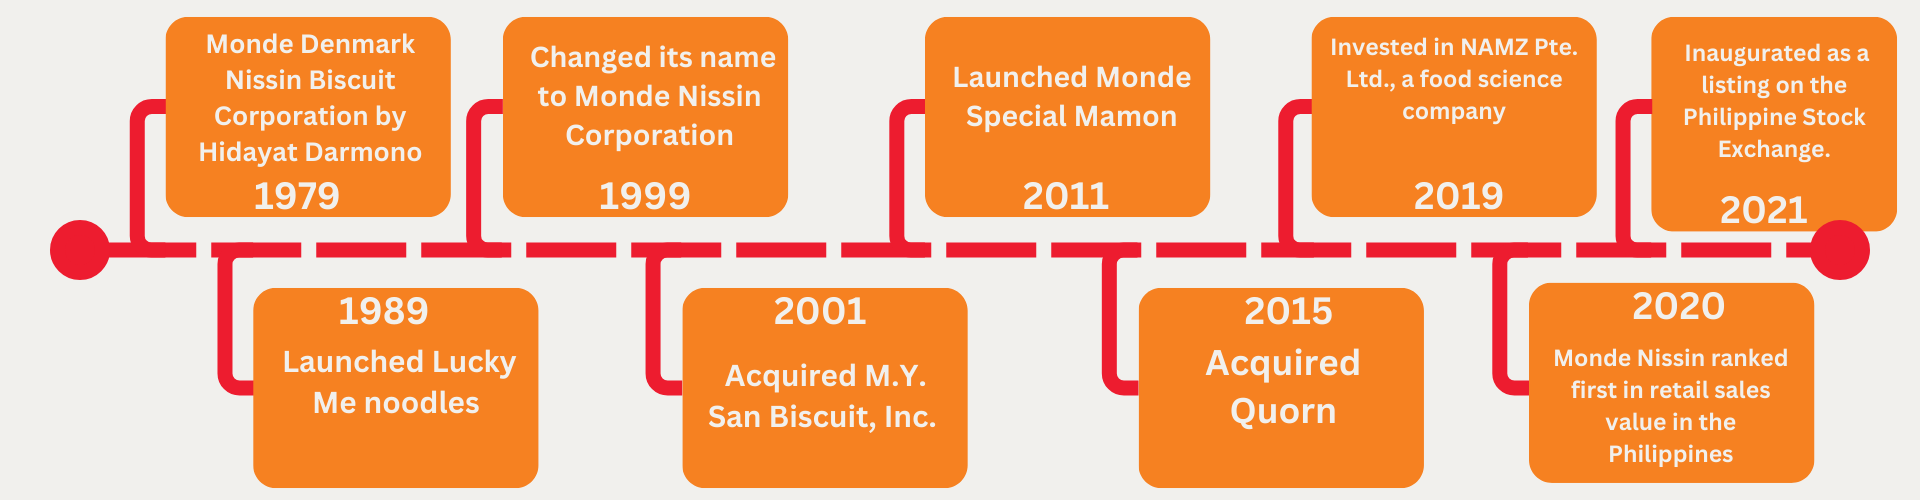 Monde Nissin Timeline